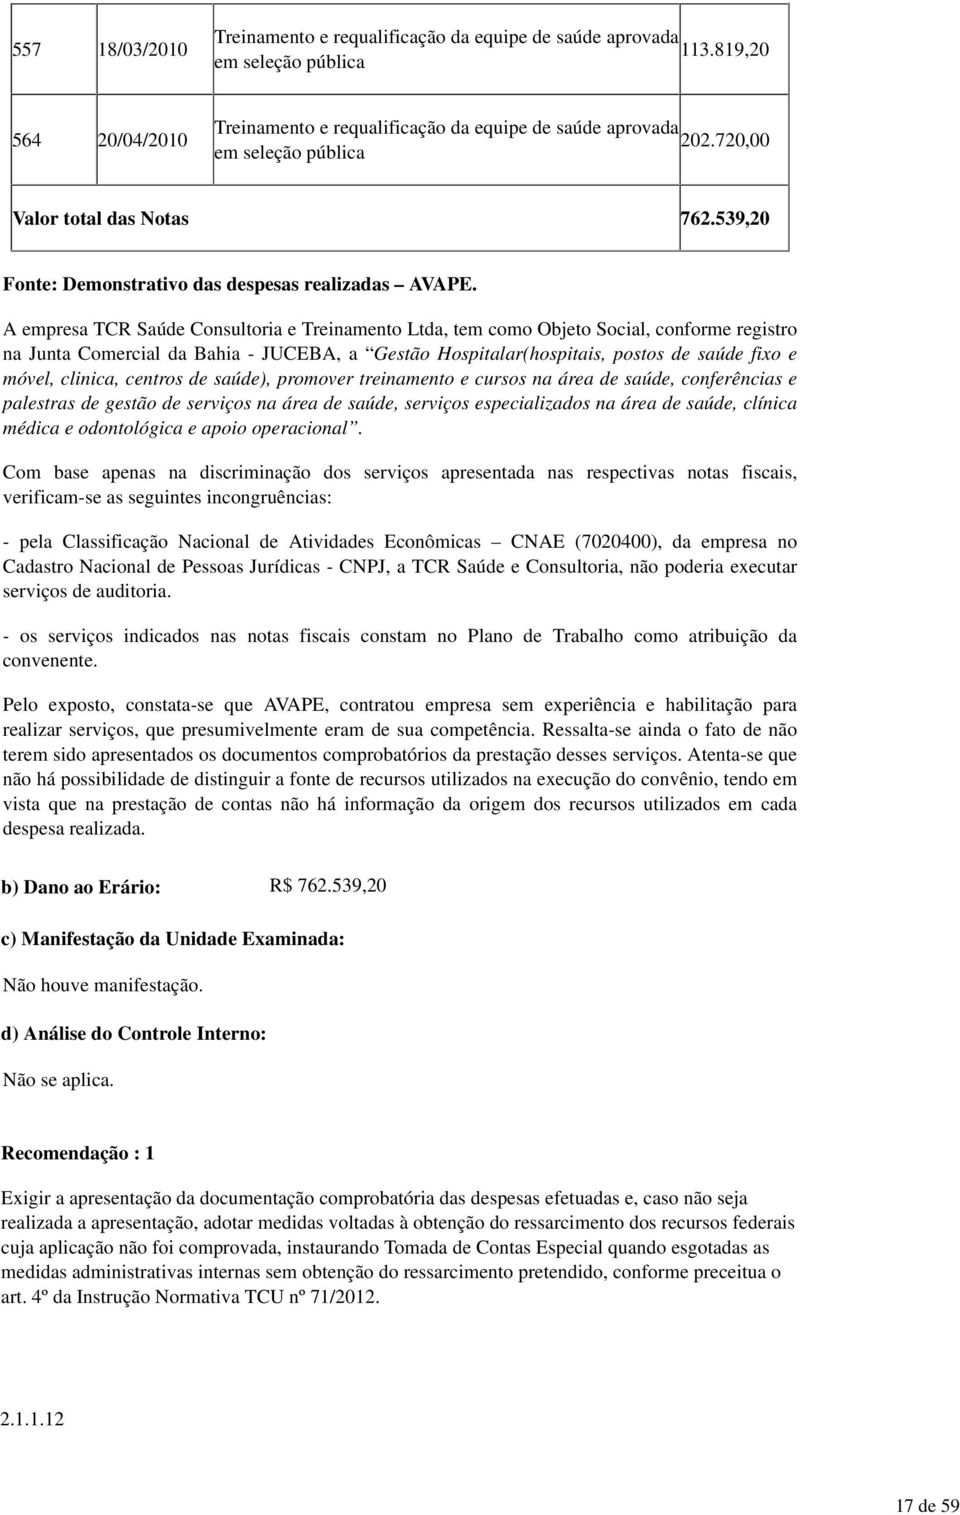 A empresa TCR Saúde Consultoria e Treinamento Ltda, tem como Objeto Social, conforme registro na Junta Comercial da Bahia - JUCEBA, a Gestão Hospitalar(hospitais, postos de saúde fixo e móvel,